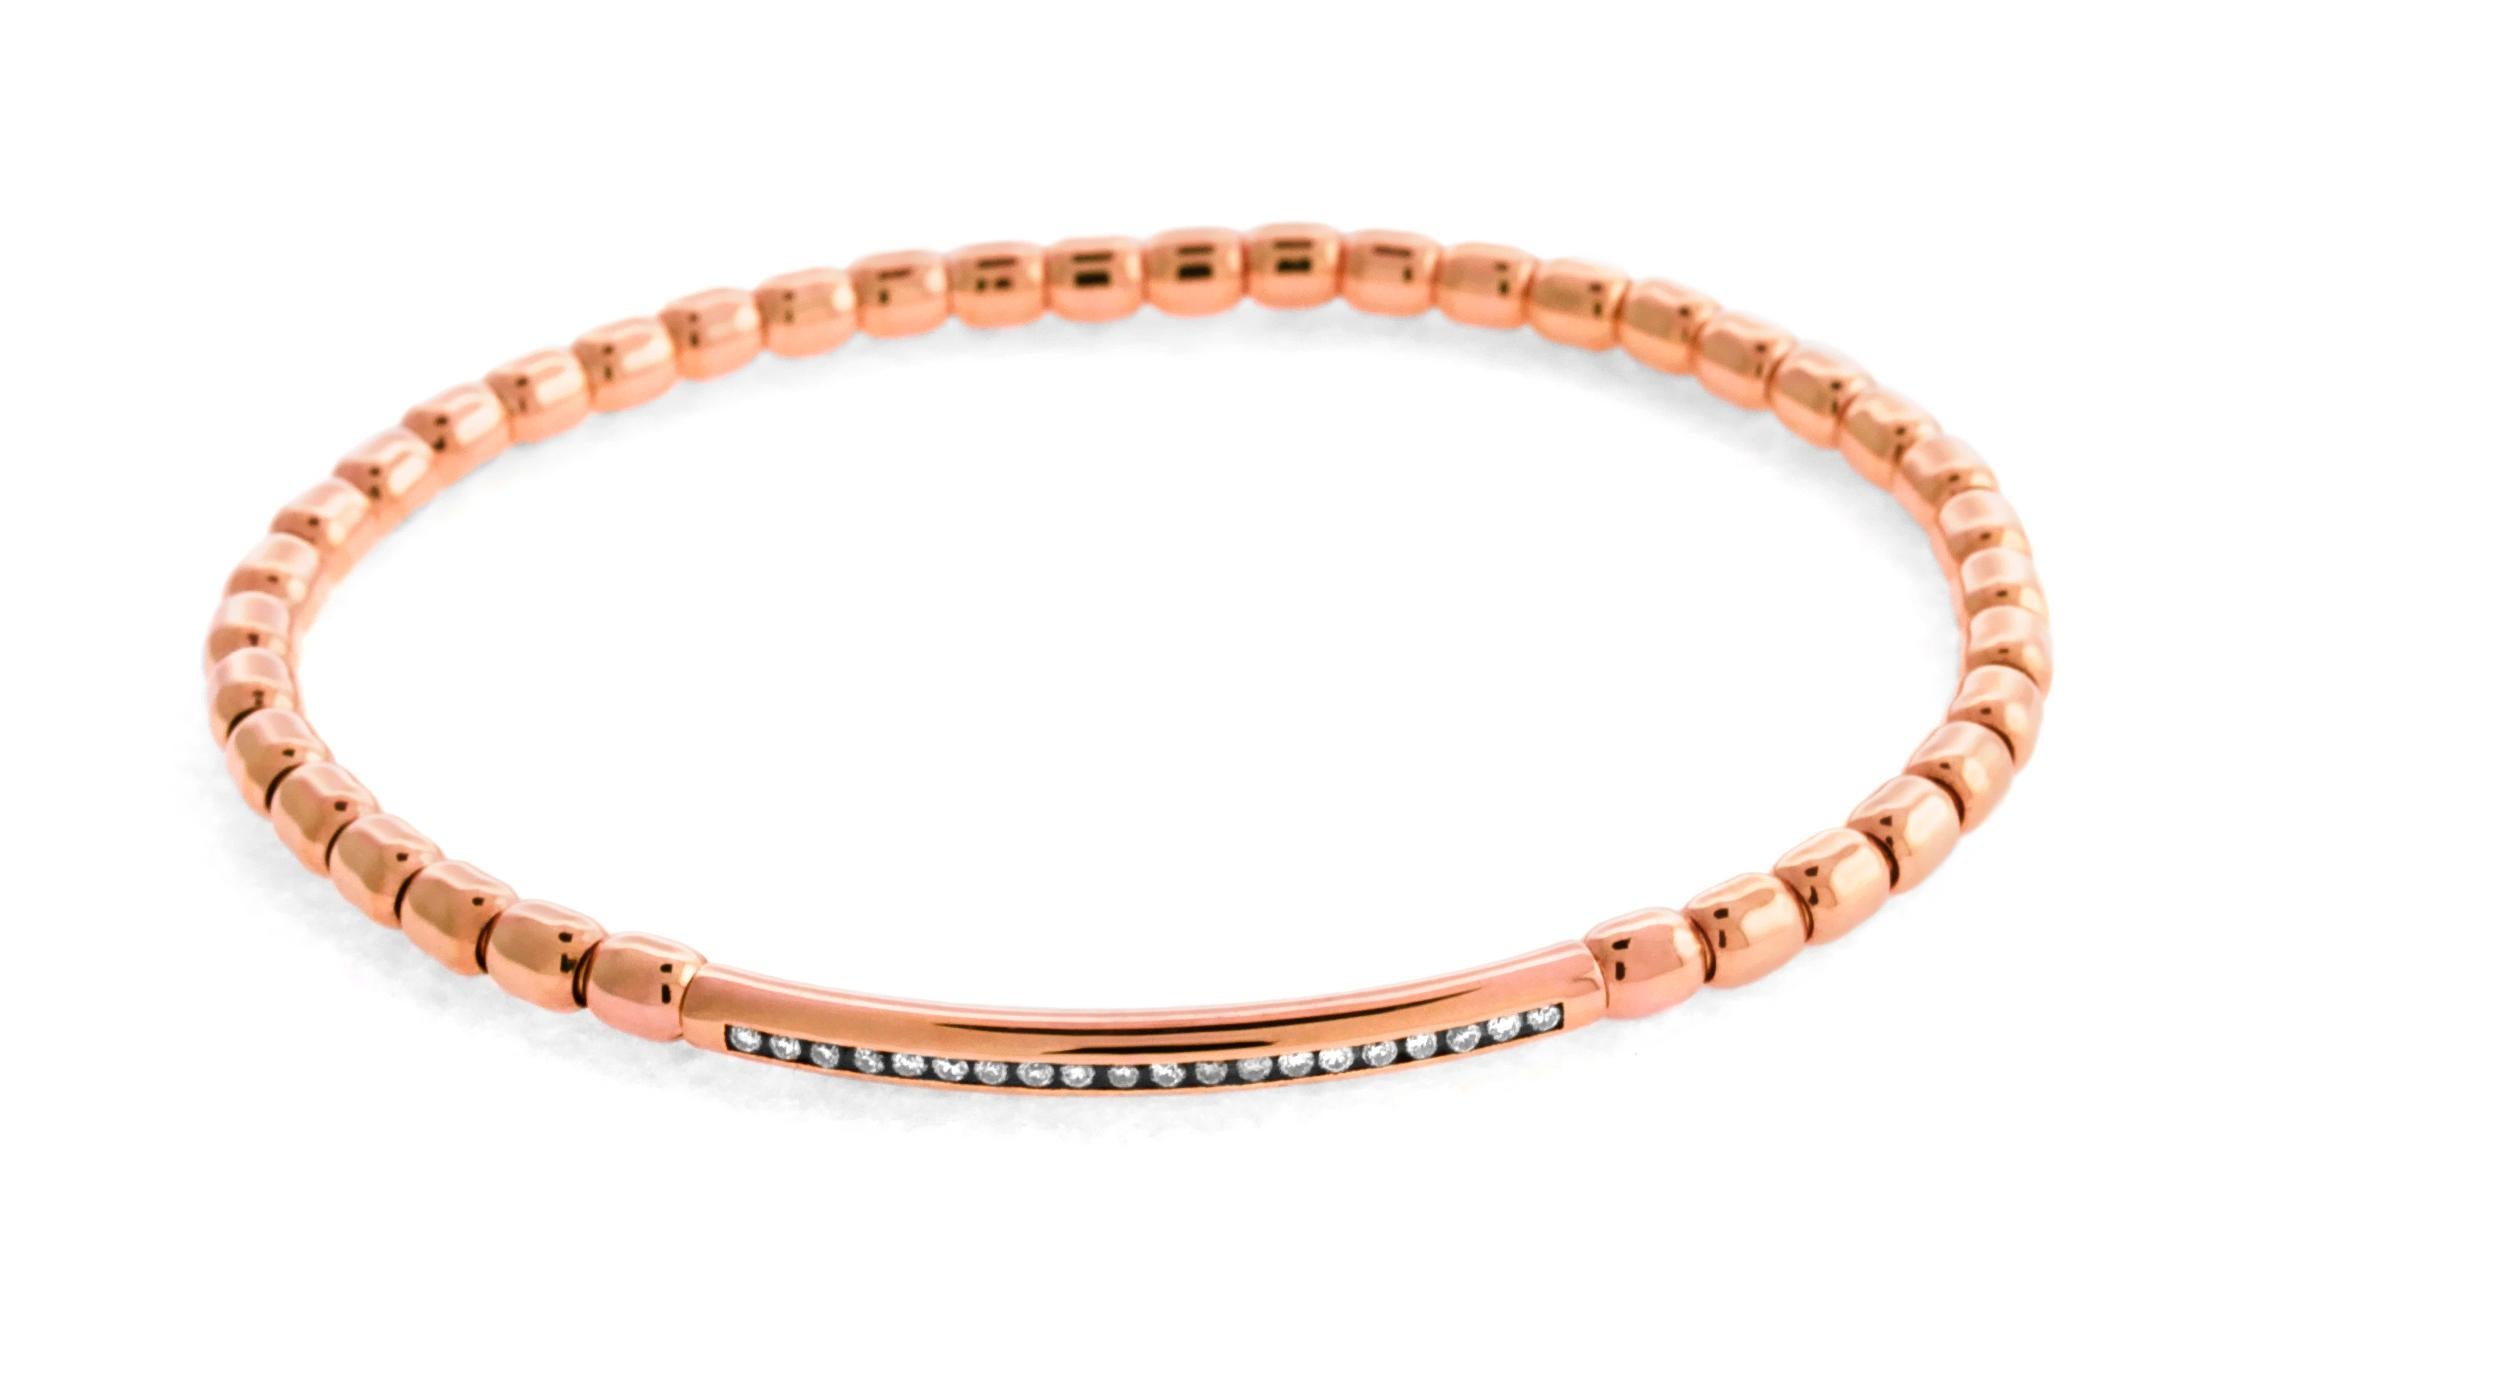 Une collection délicate qui explore un design innovant et une beauté raffinée. Ce bracelet en perles 18 carats est spécialement conçu à l'aide d'un élastique qui est dissimulé par une fine chambre à air en or 18 carats. Whiting est orné de 20